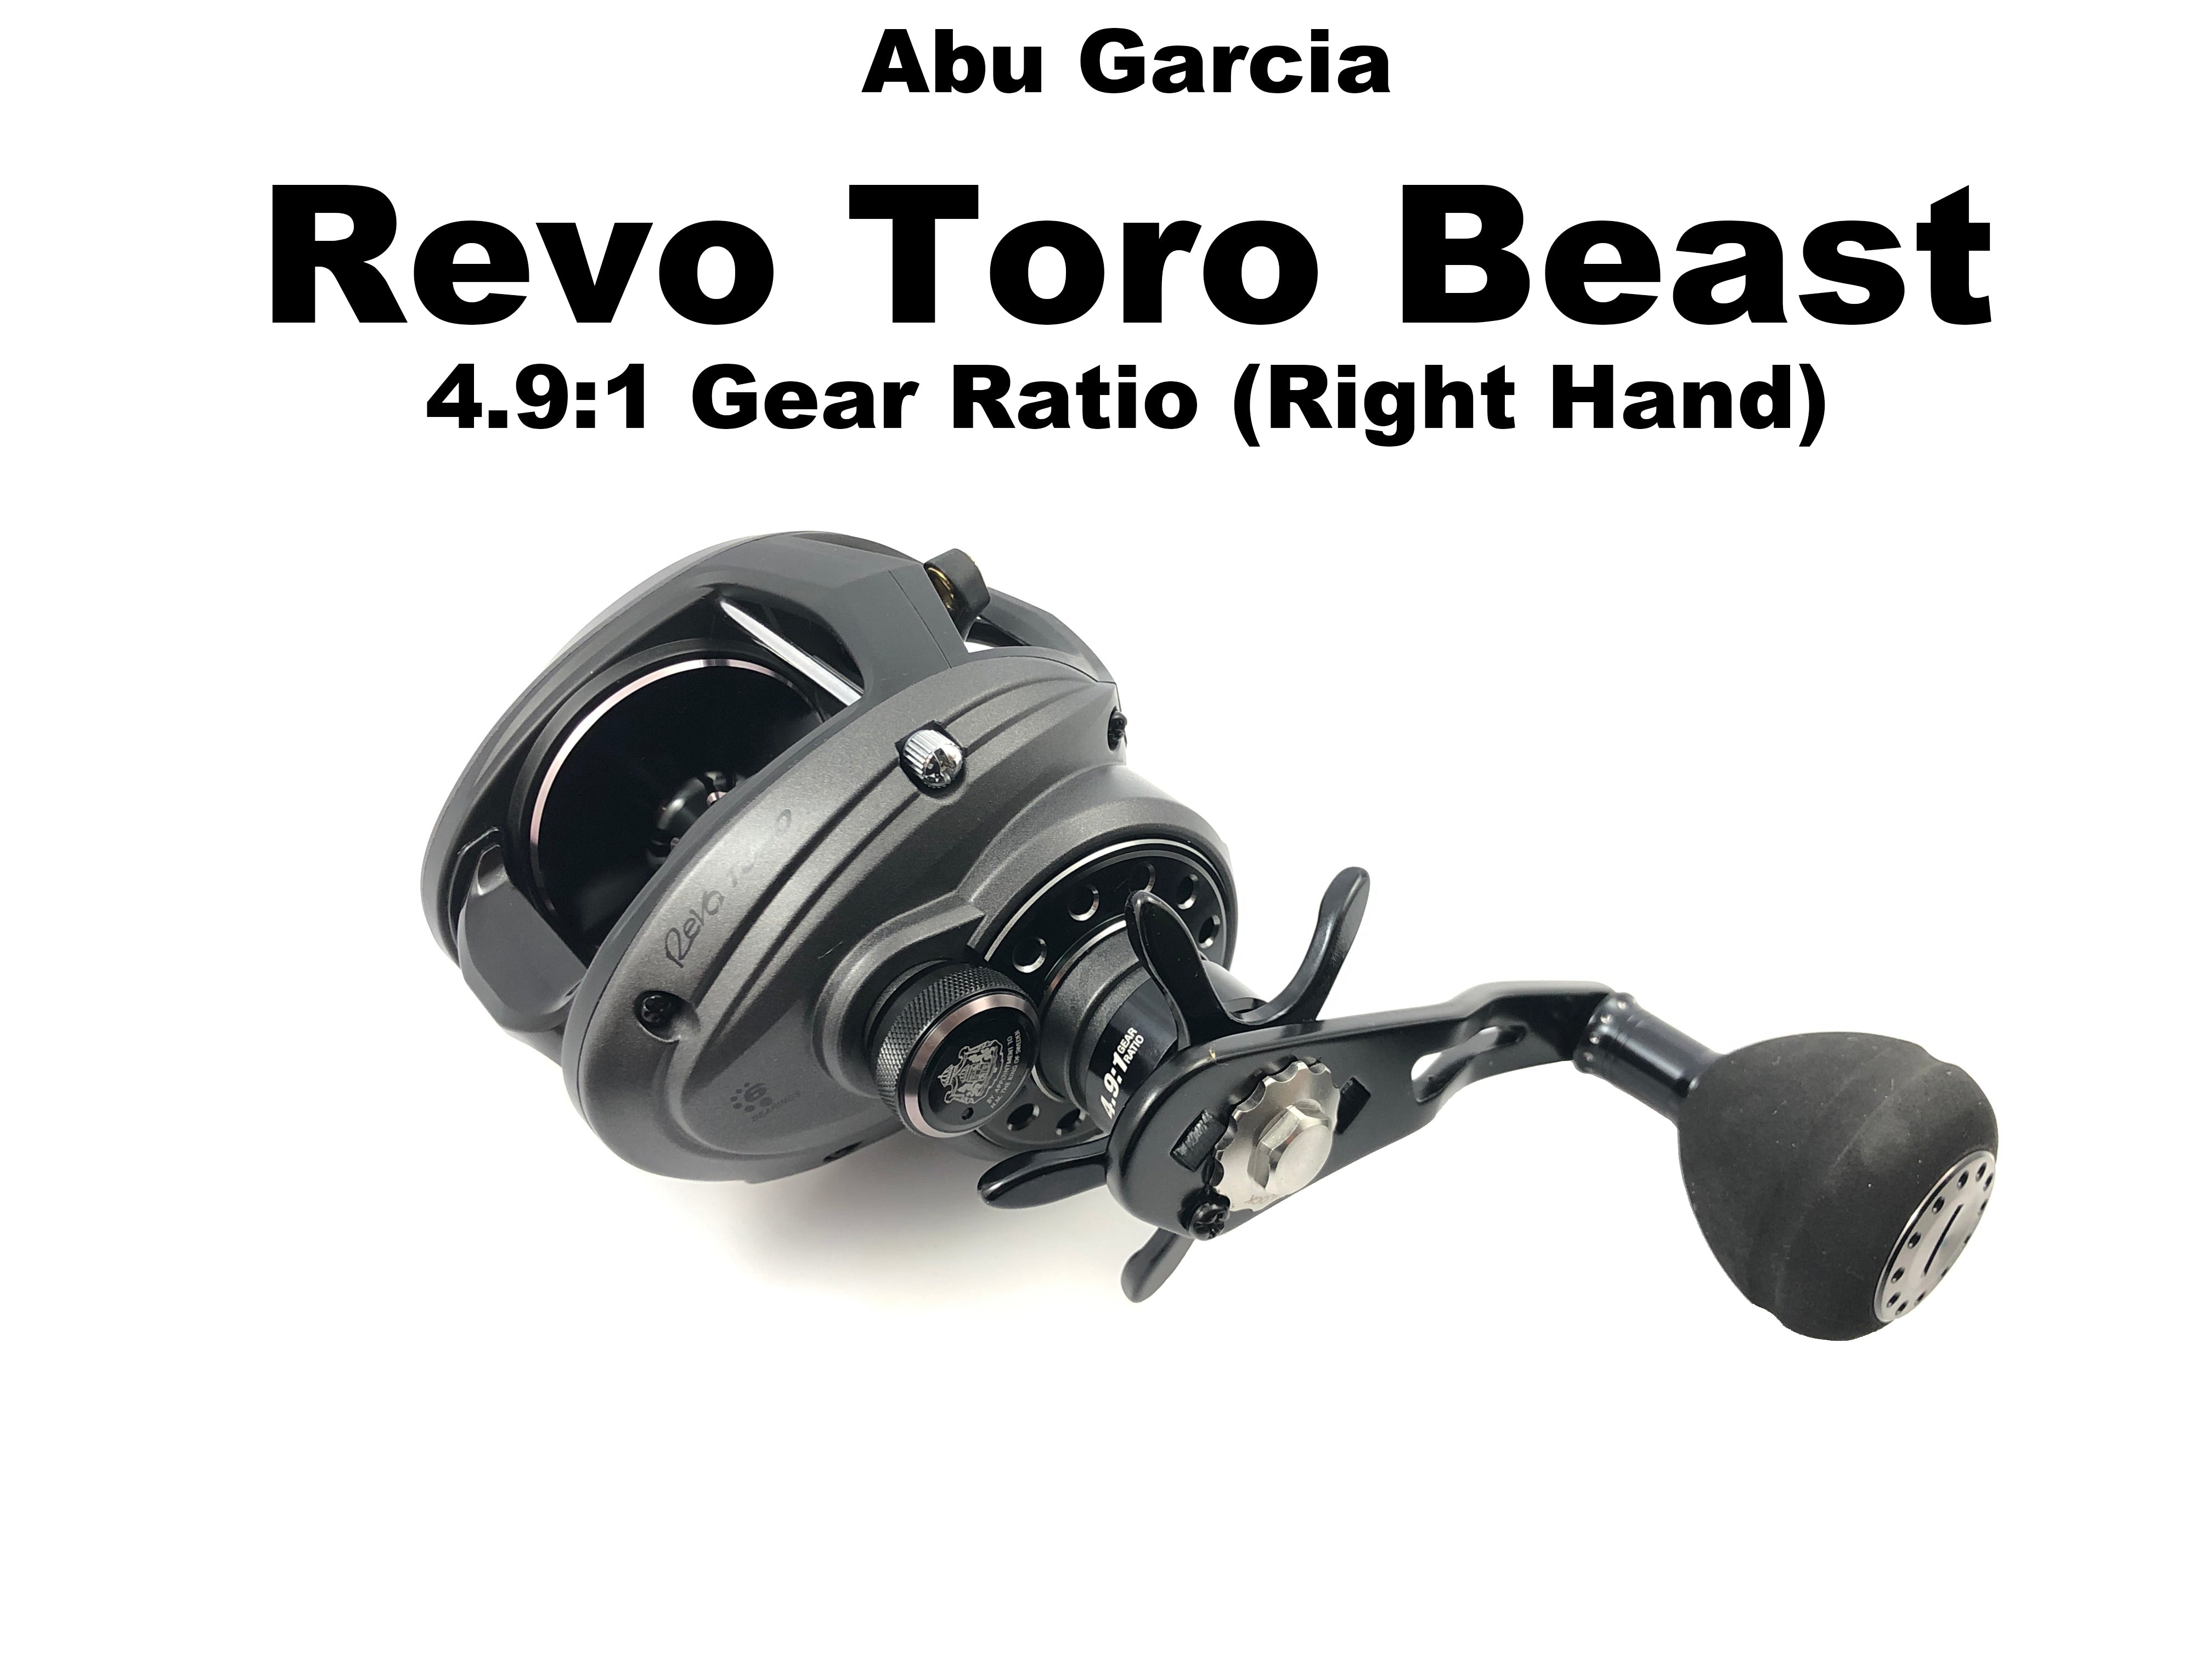 Abu Garcia Revo Toro Beast 4.9:1 Gear Ratio (Right Hand) – Team